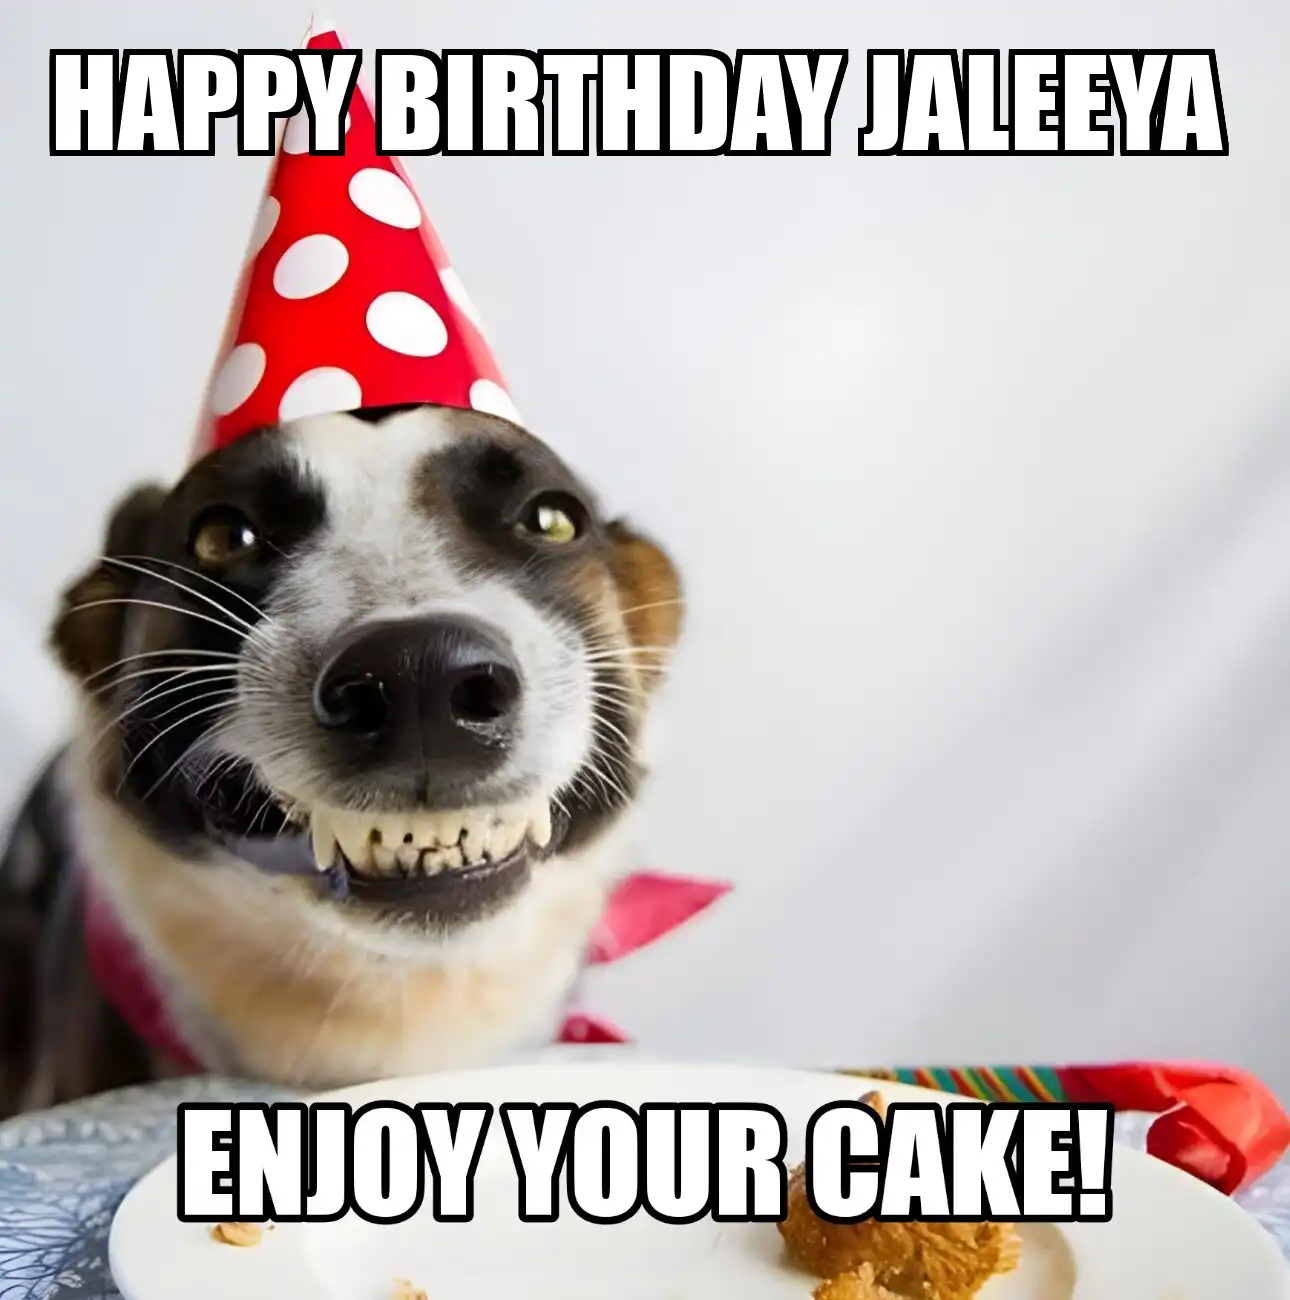 Happy Birthday Jaleeya Enjoy Your Cake Dog Meme